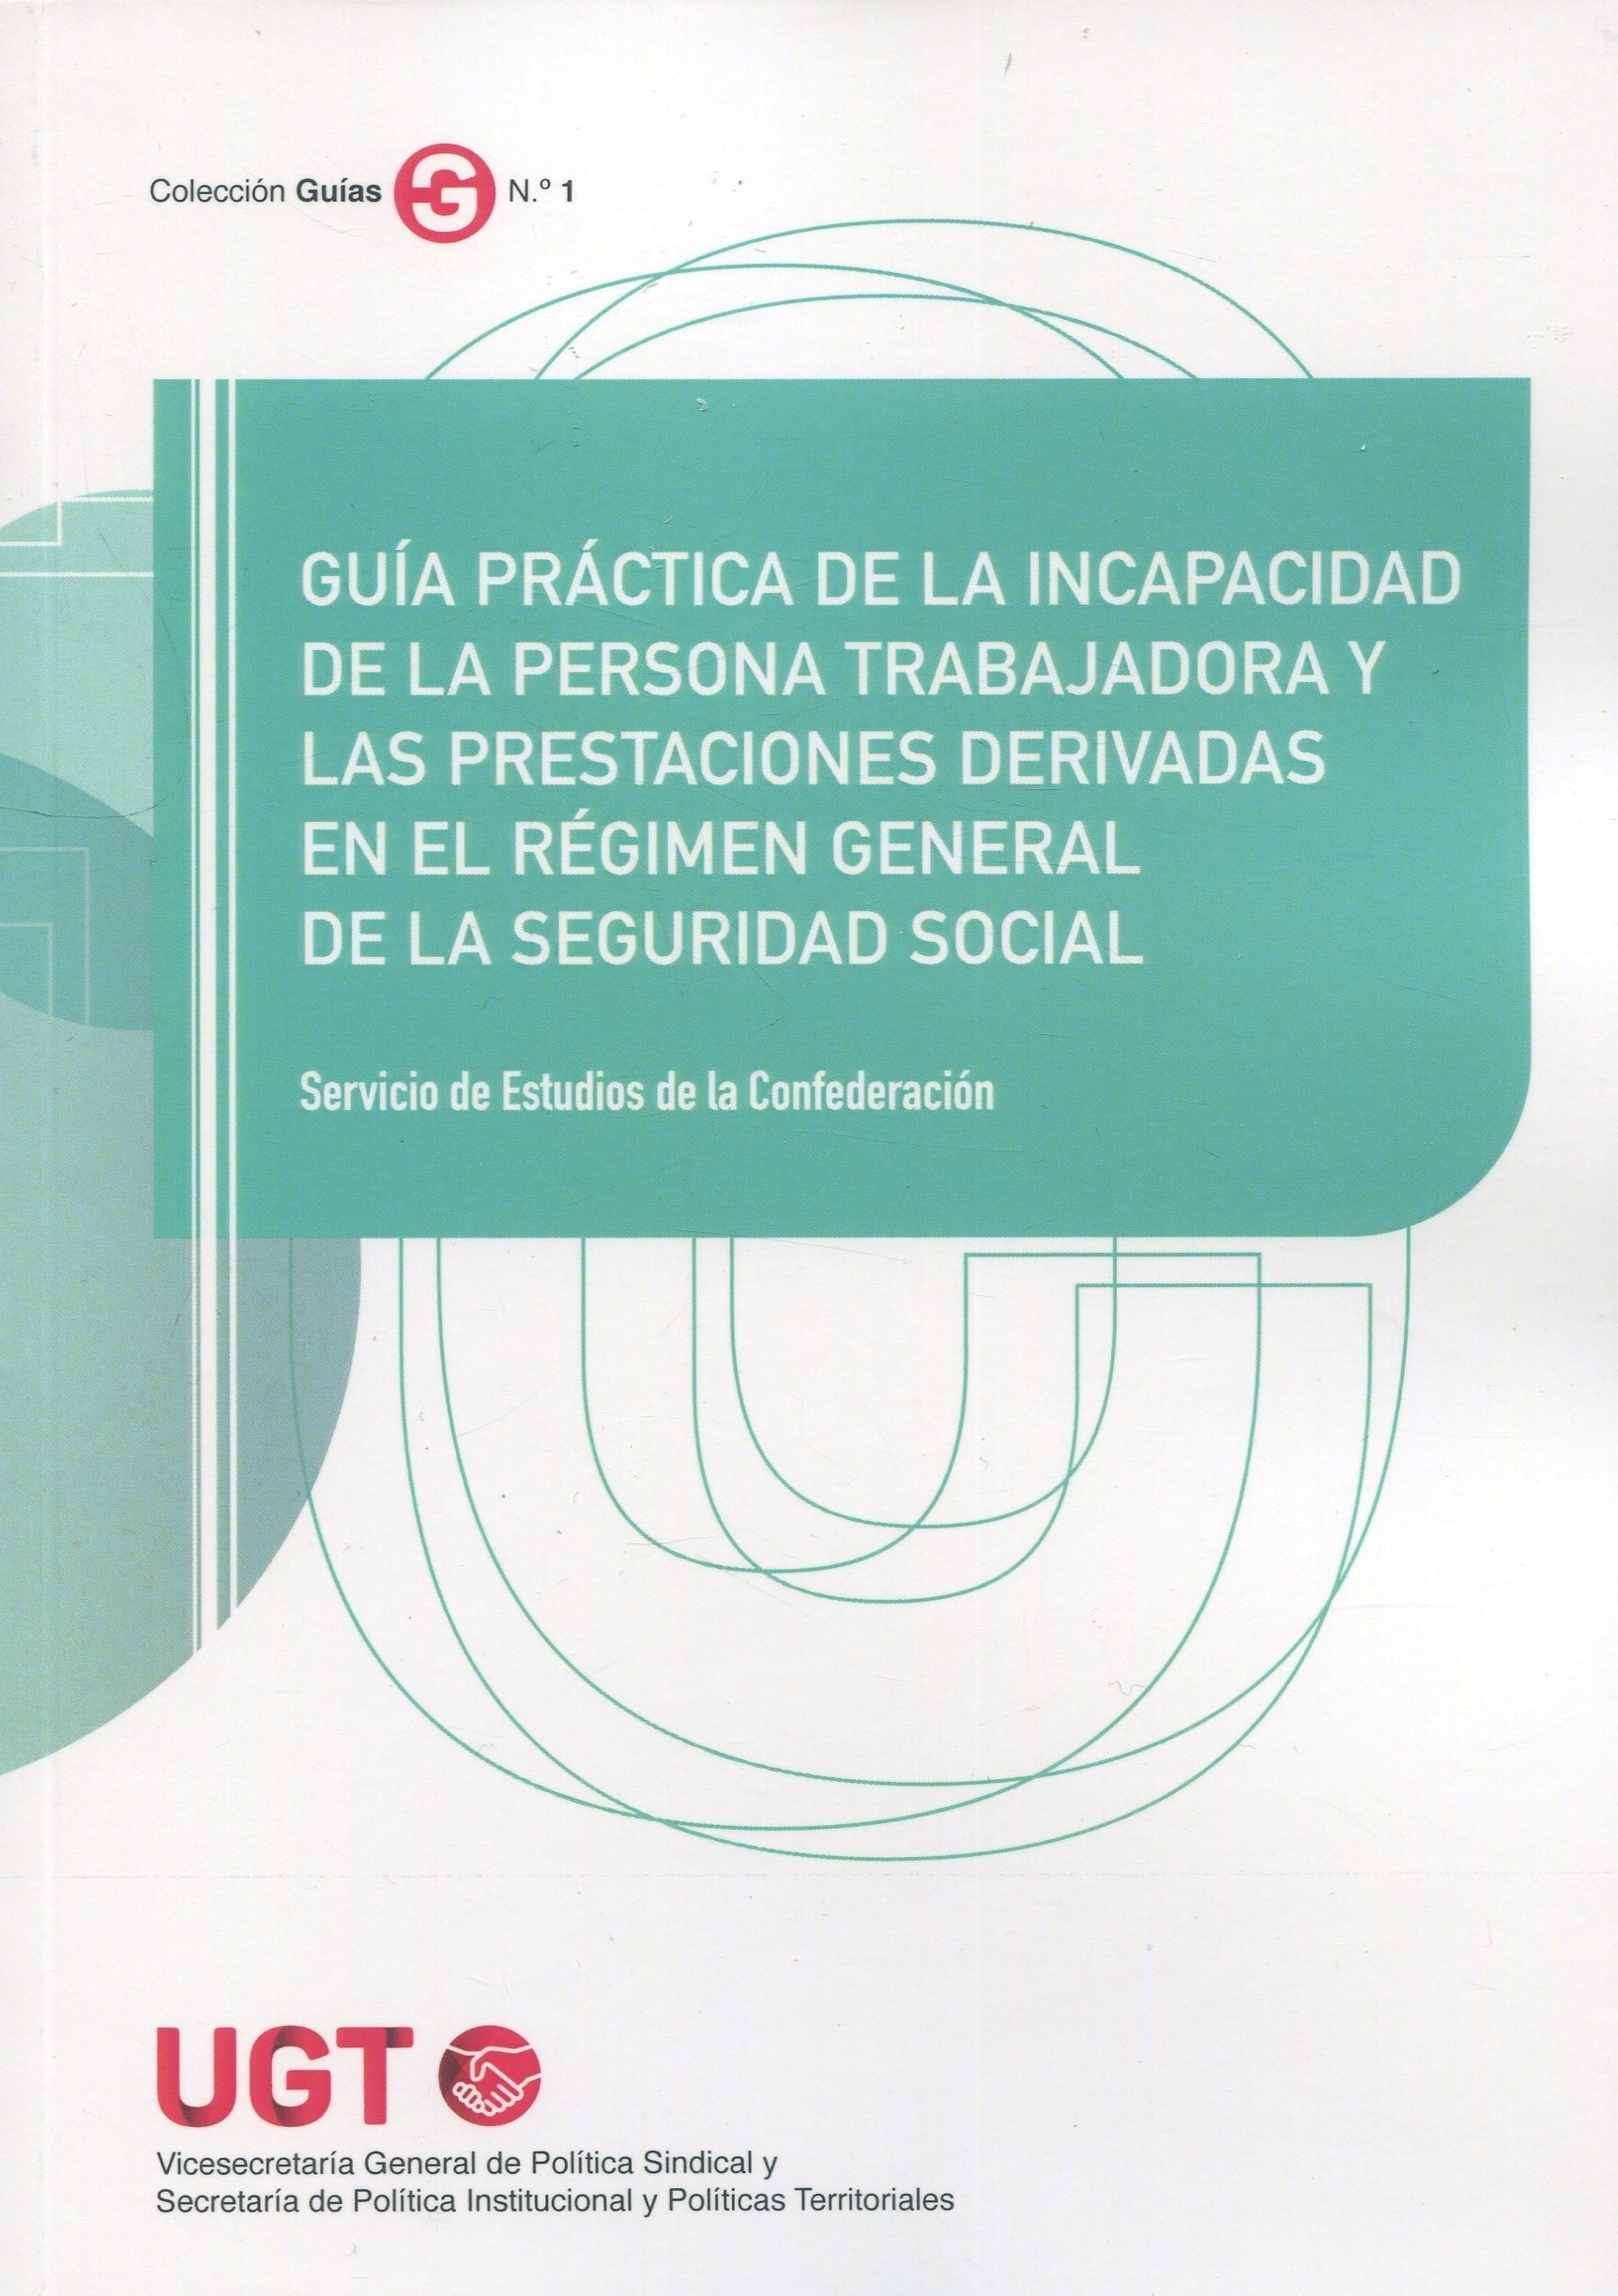 Guía práctica de la incapacidad de la persona trabajadora y las prestaciones derivadas "en el Régimen General de la Seguridad Social"